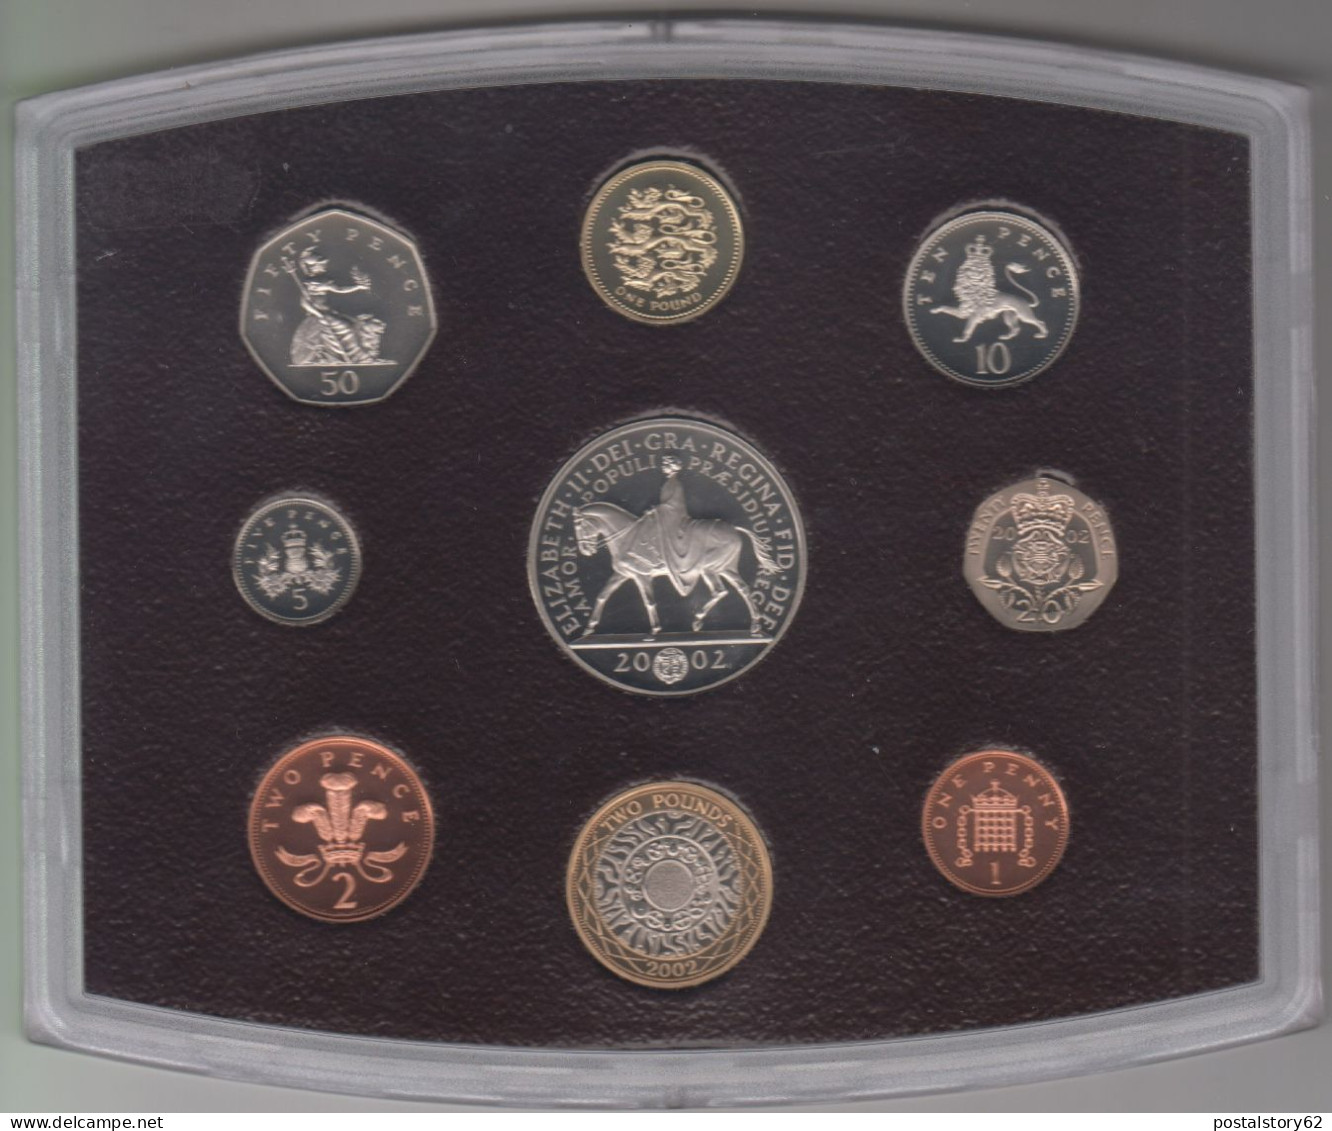 Gran Bretagna, United Kingdom Proof Collection - Serie Completa Ufficiale In Confezione Integra 2002 - Maundy Sets & Commémoratives